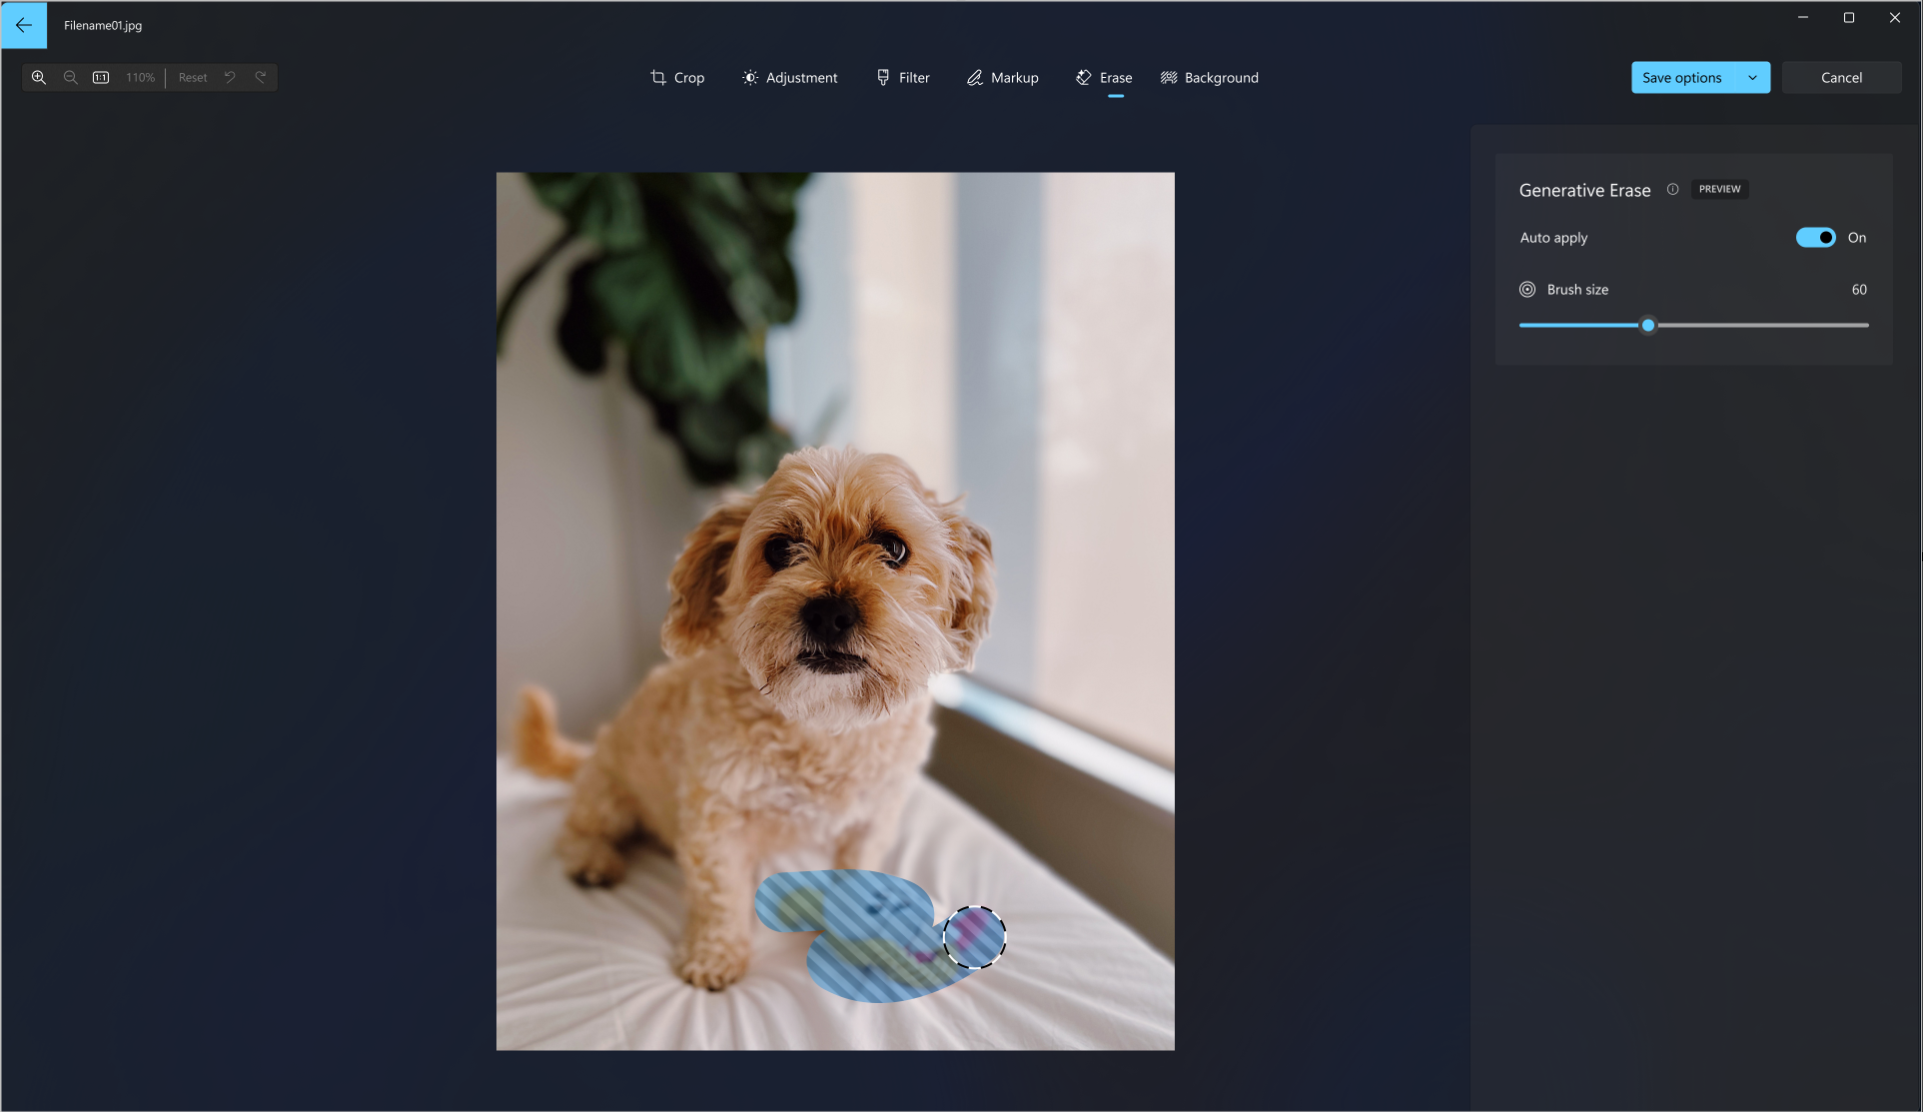 Köpek oyuncakını resimden silmek için bir köpeğin fotoğrafında kullanılan oluşturucu silme aracının ekran görüntüsü.